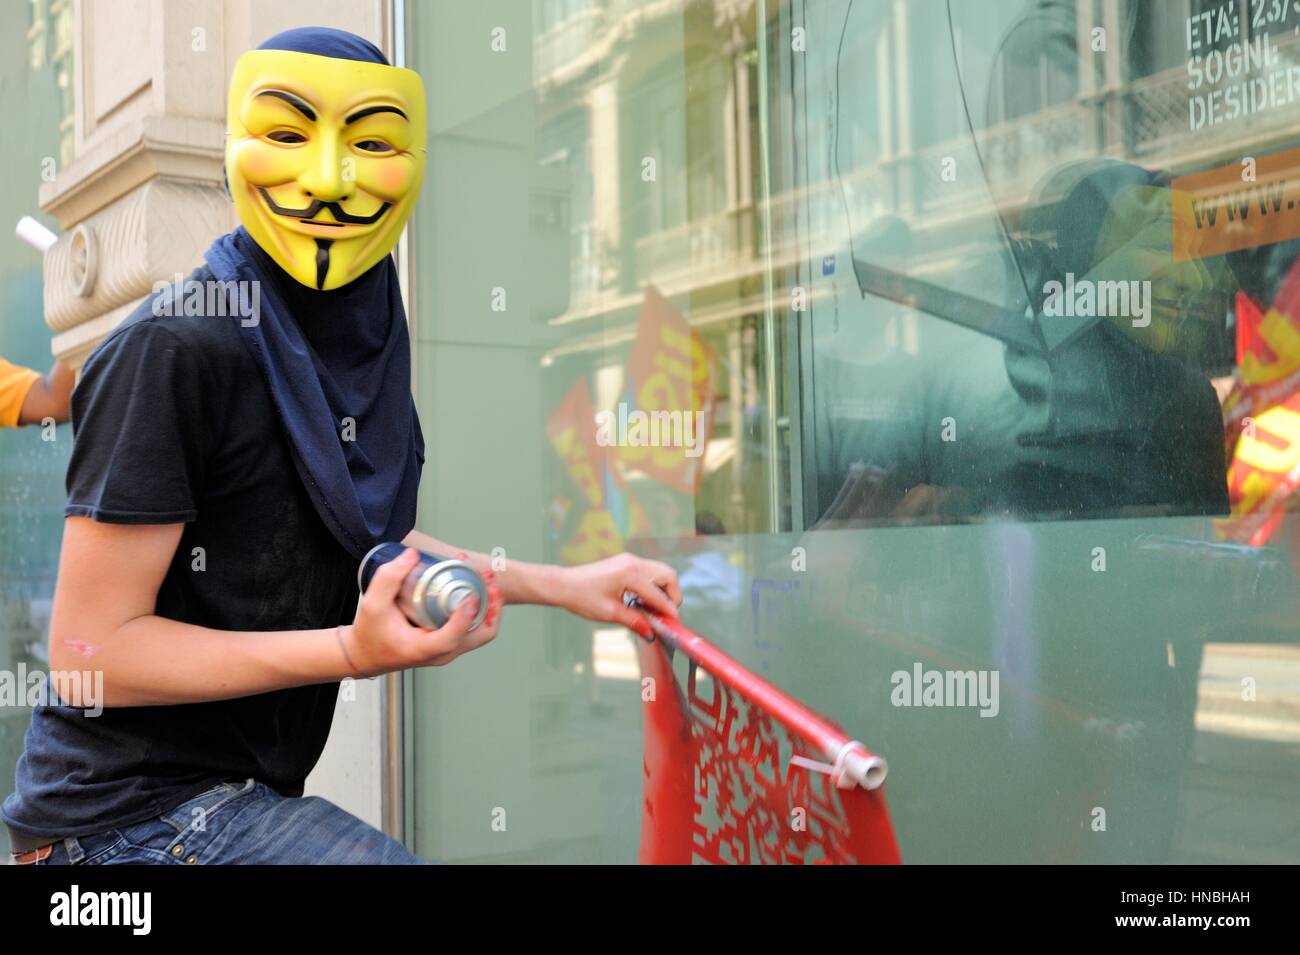 Manifestant anonyme contre l'austérité en démonstration Banque D'Images